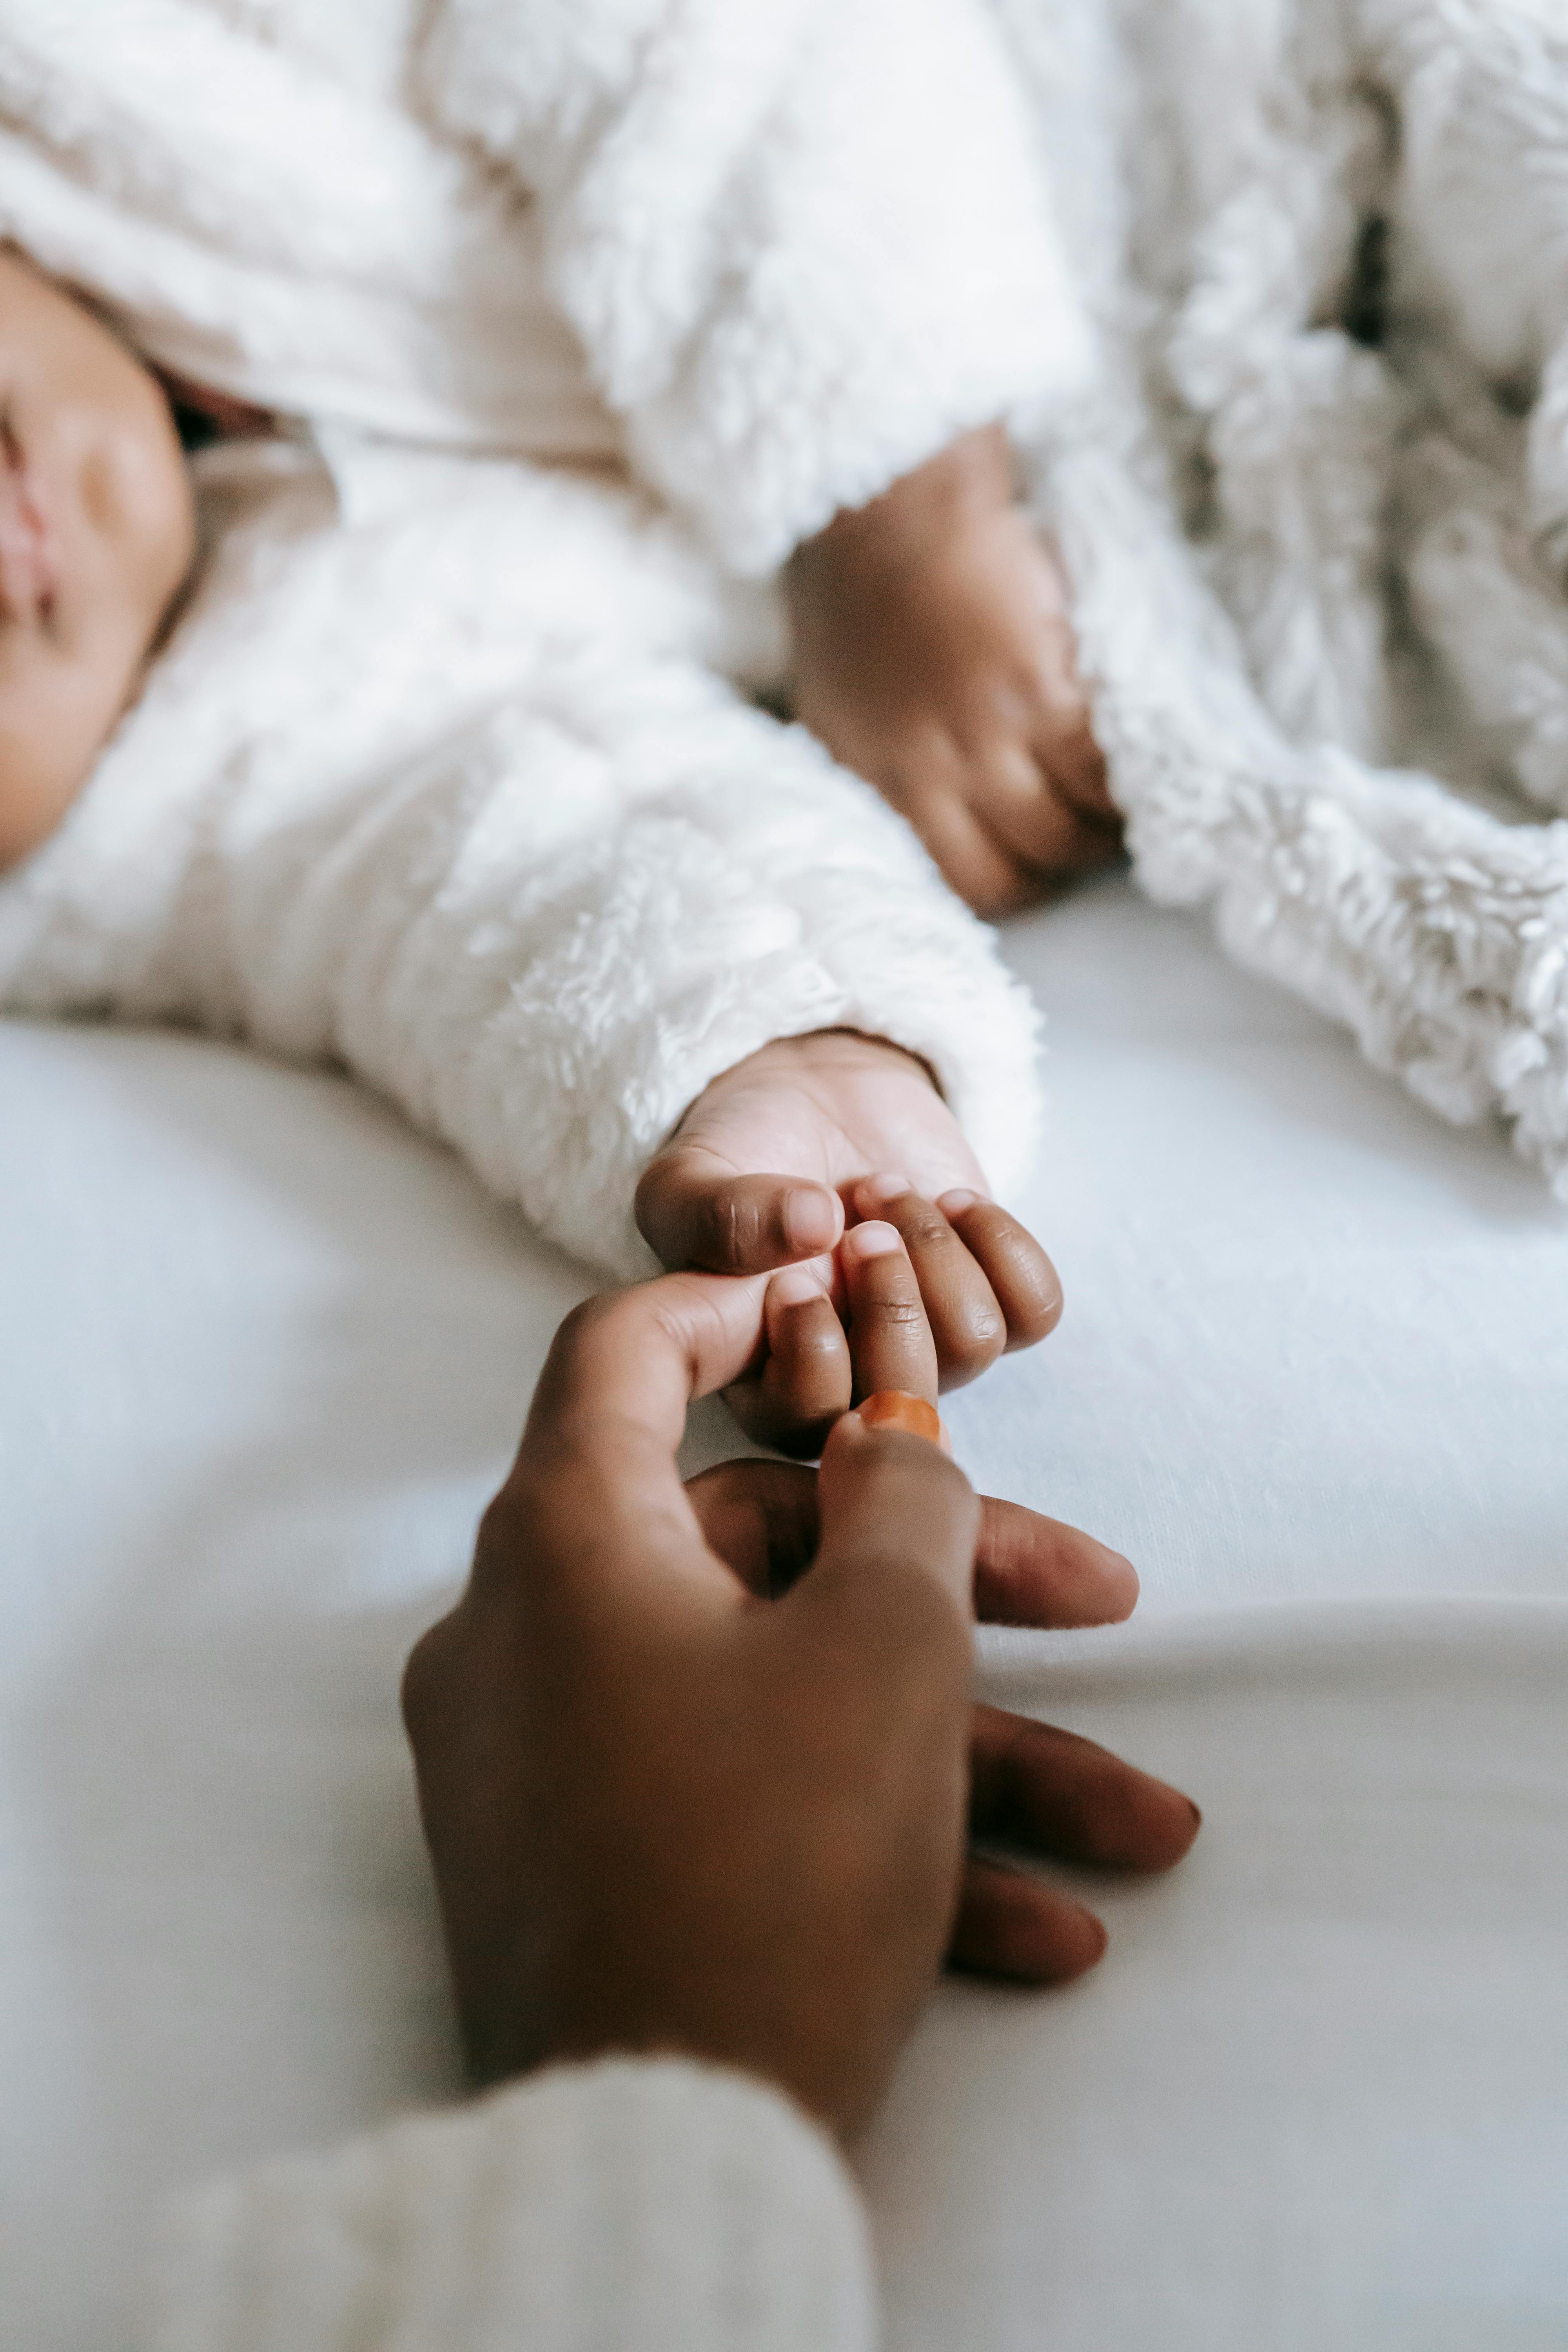 Die Hand einer Frau berührt die Hand eines Babys | Quelle: Pexels